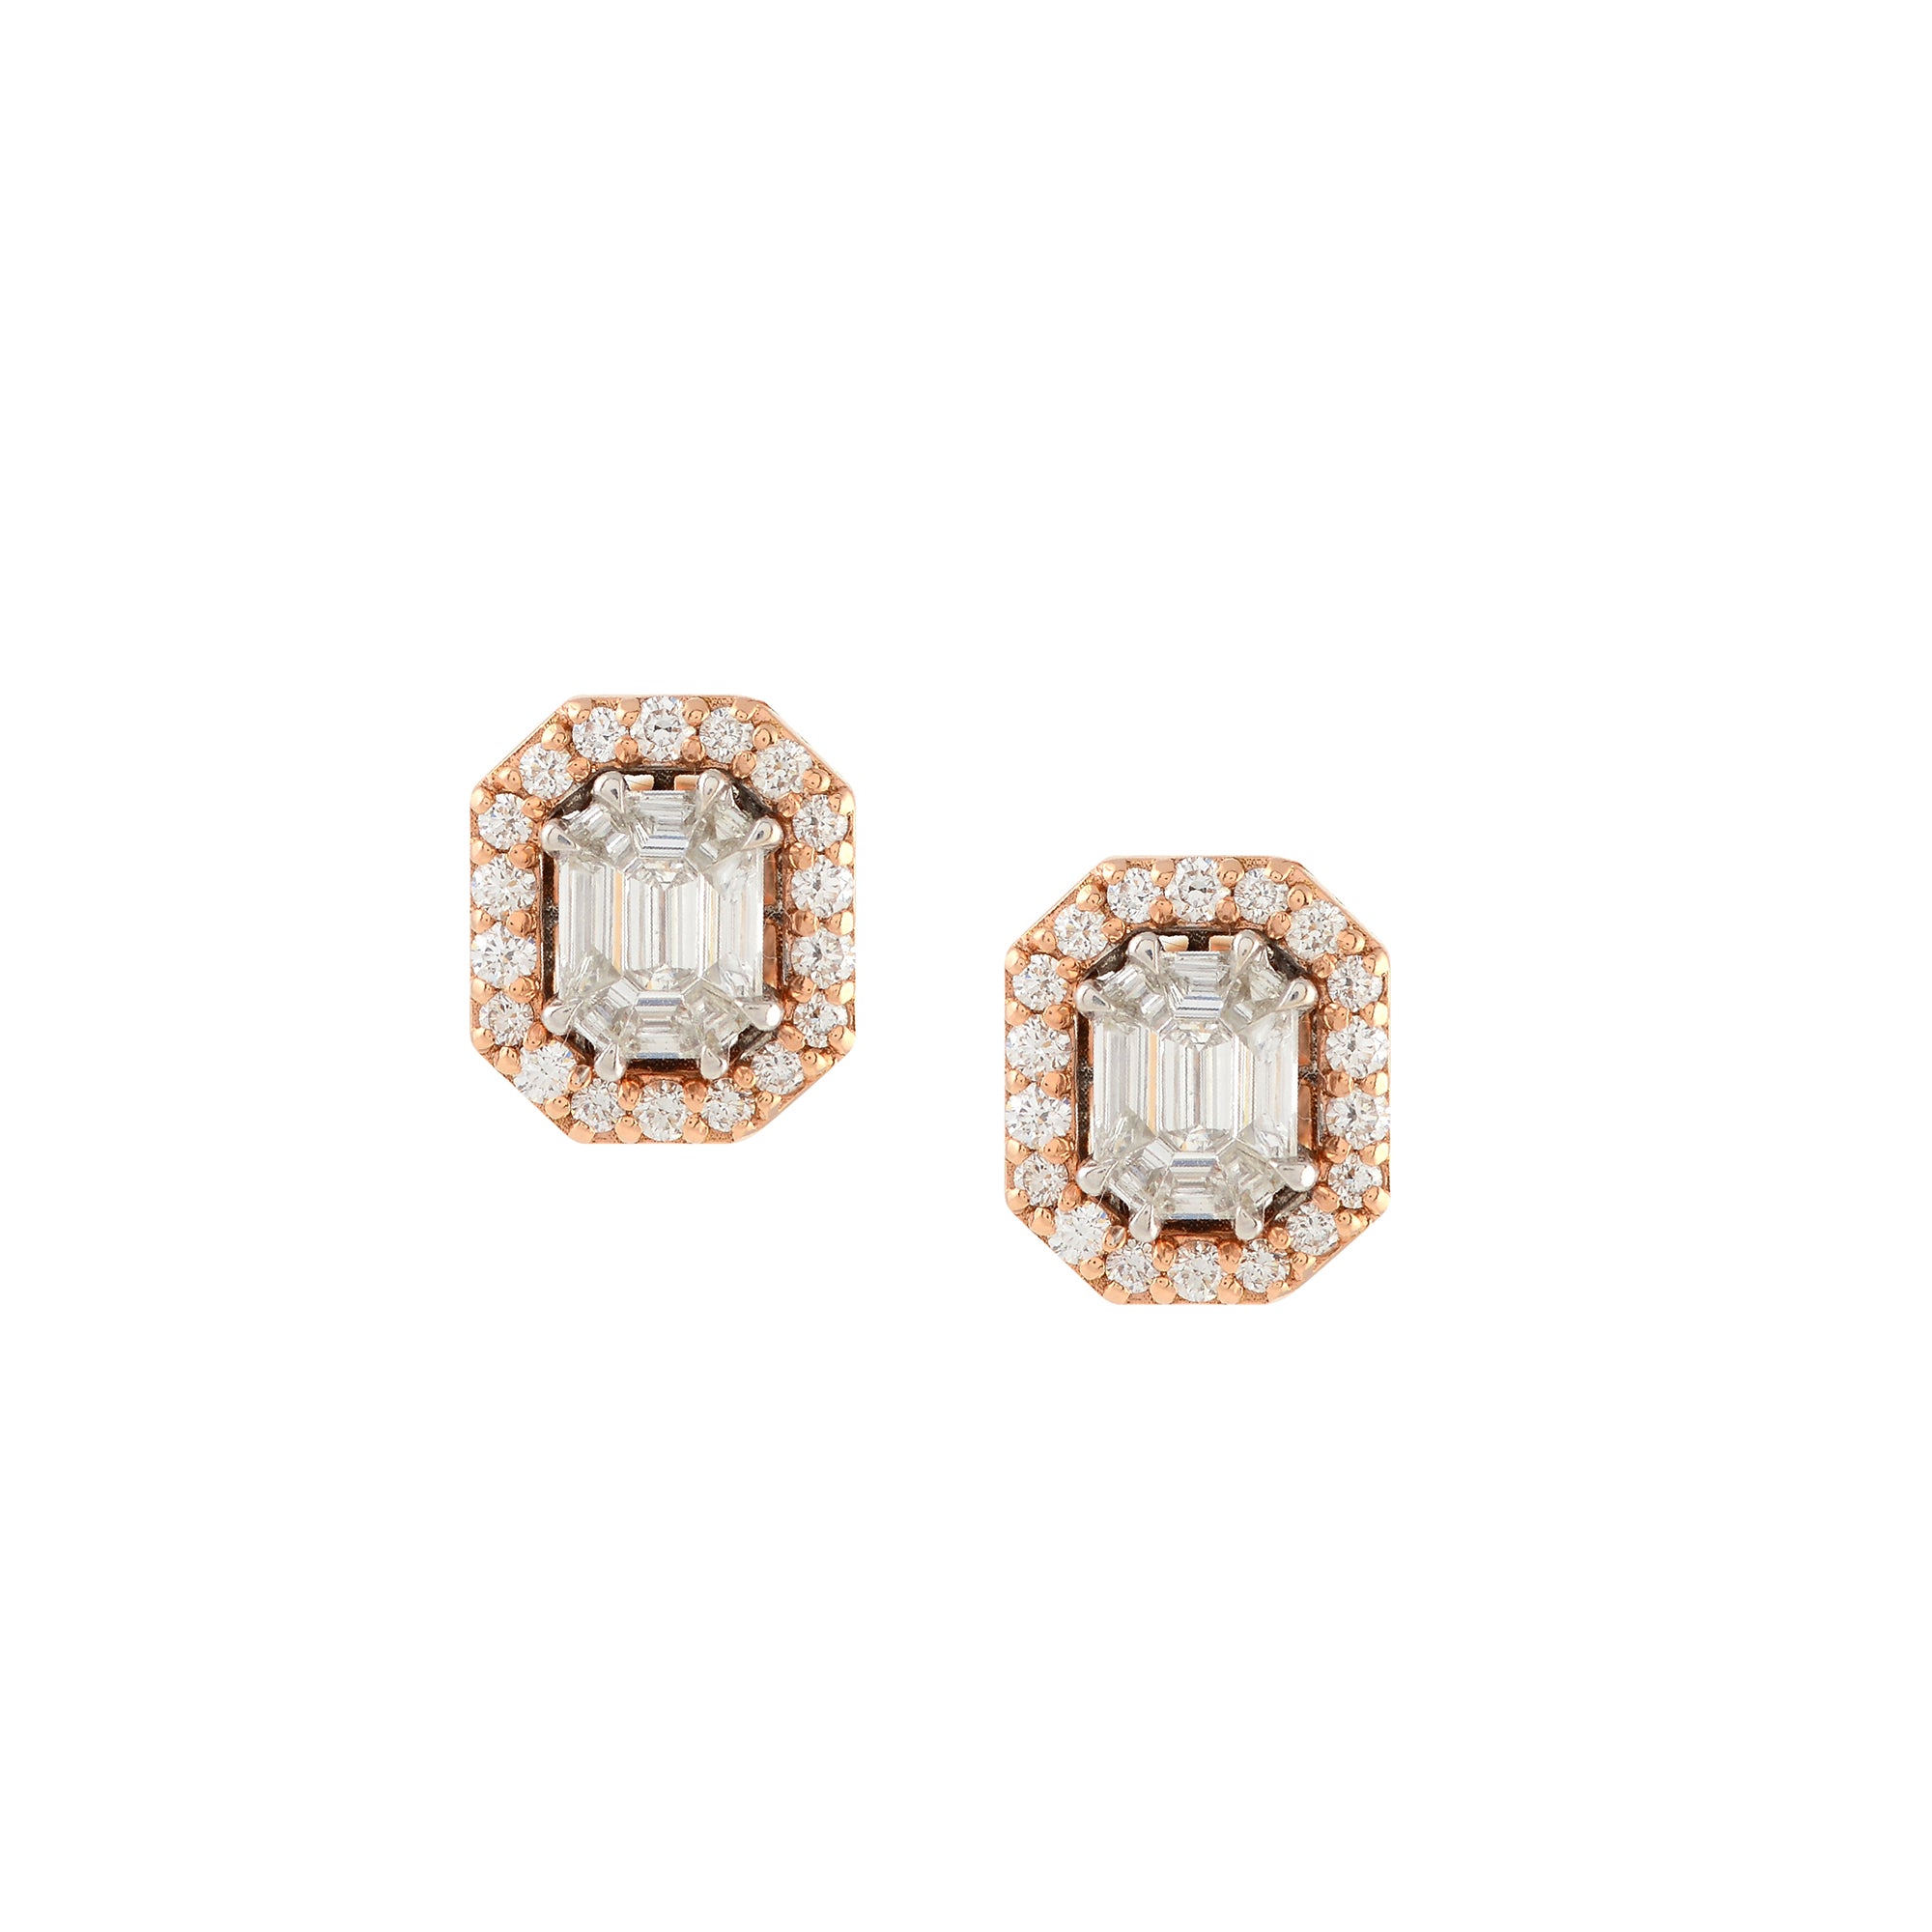 Emerlald Cut Diamond Stud Earrings